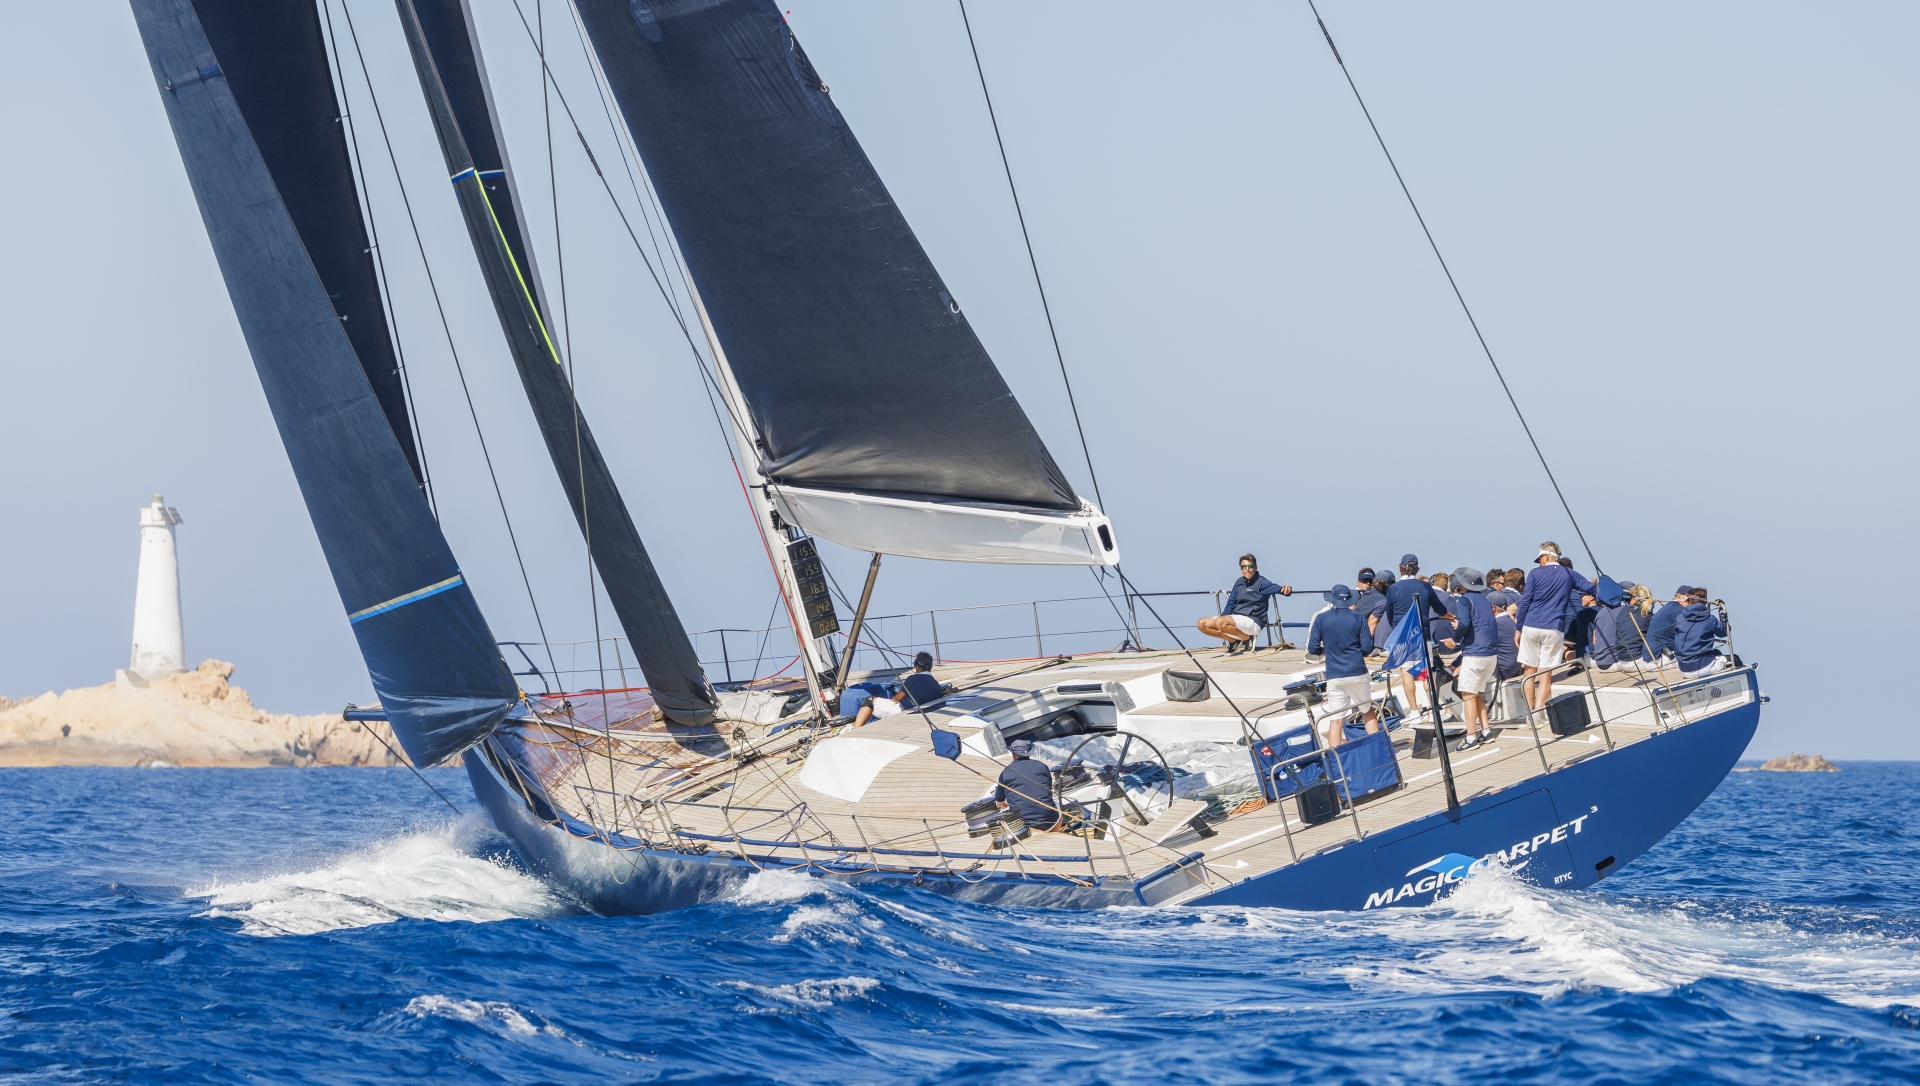 Giorgio Armani Superyacht Regatta, Magic Carpet Cubed è il vincitore assoluto - Comunicati Stampa - Yacht Club Costa Smeralda